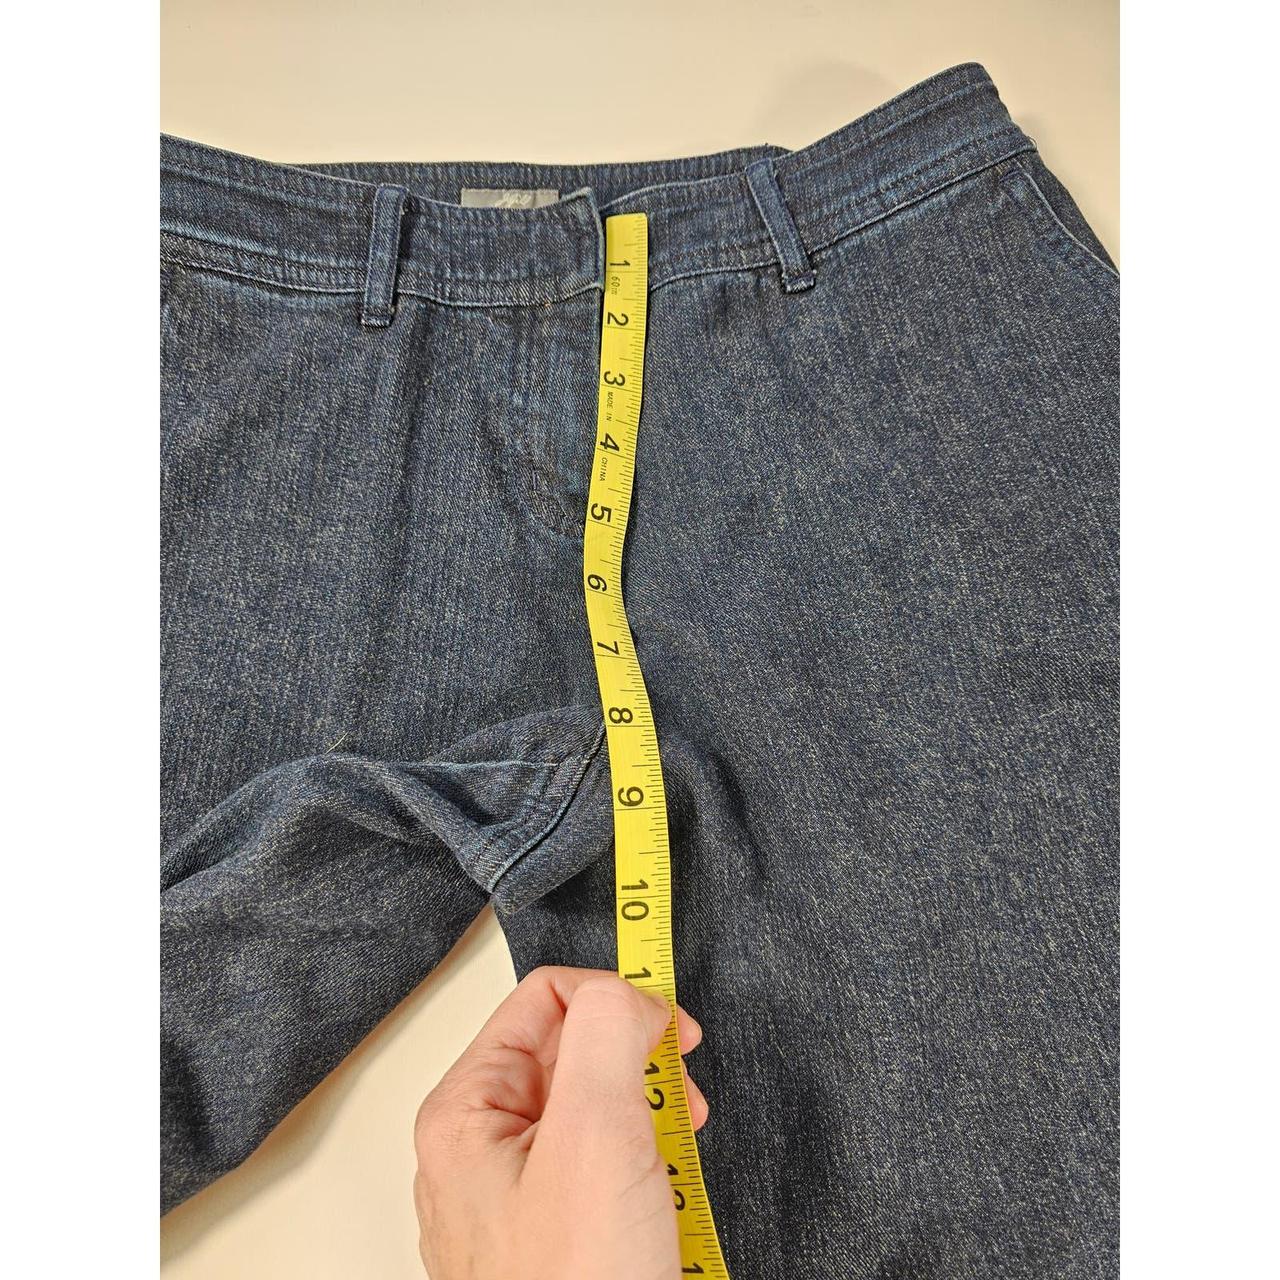 Size 2 j jill stretch jeans. Measurments in